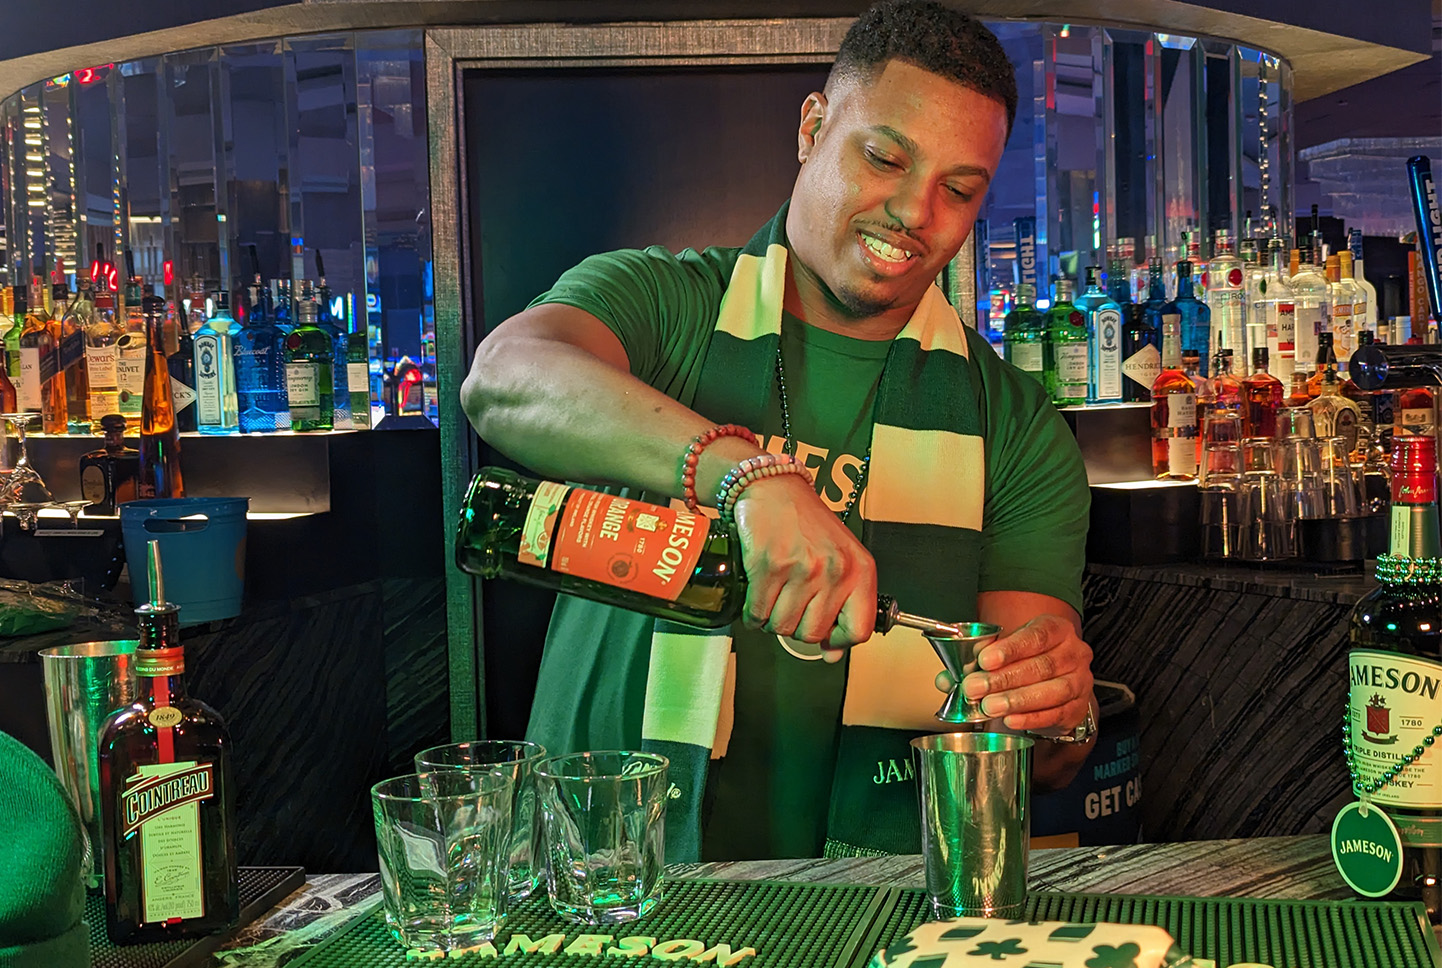 St. Patrick's Day Center Bar Bartender Making Drinks